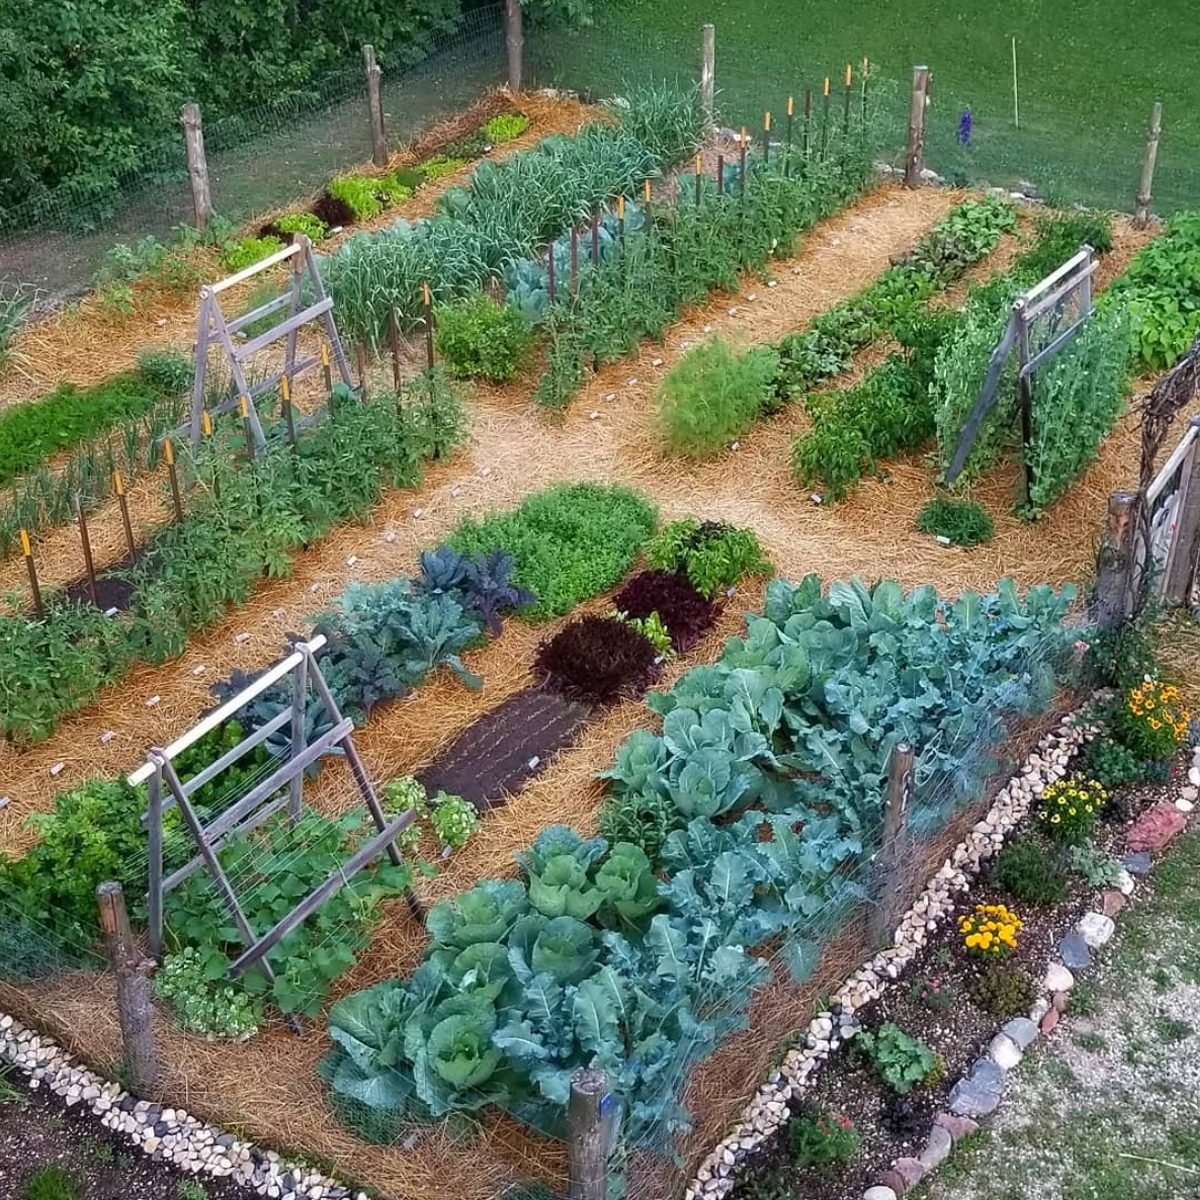 https://www.familyhandyman.com/wp-content/uploads/2022/06/In-Ground-Vegetable-Garden-courtesy-@thewiedmeyerhomestead-via-instagram.jpg?fit=700%2C700